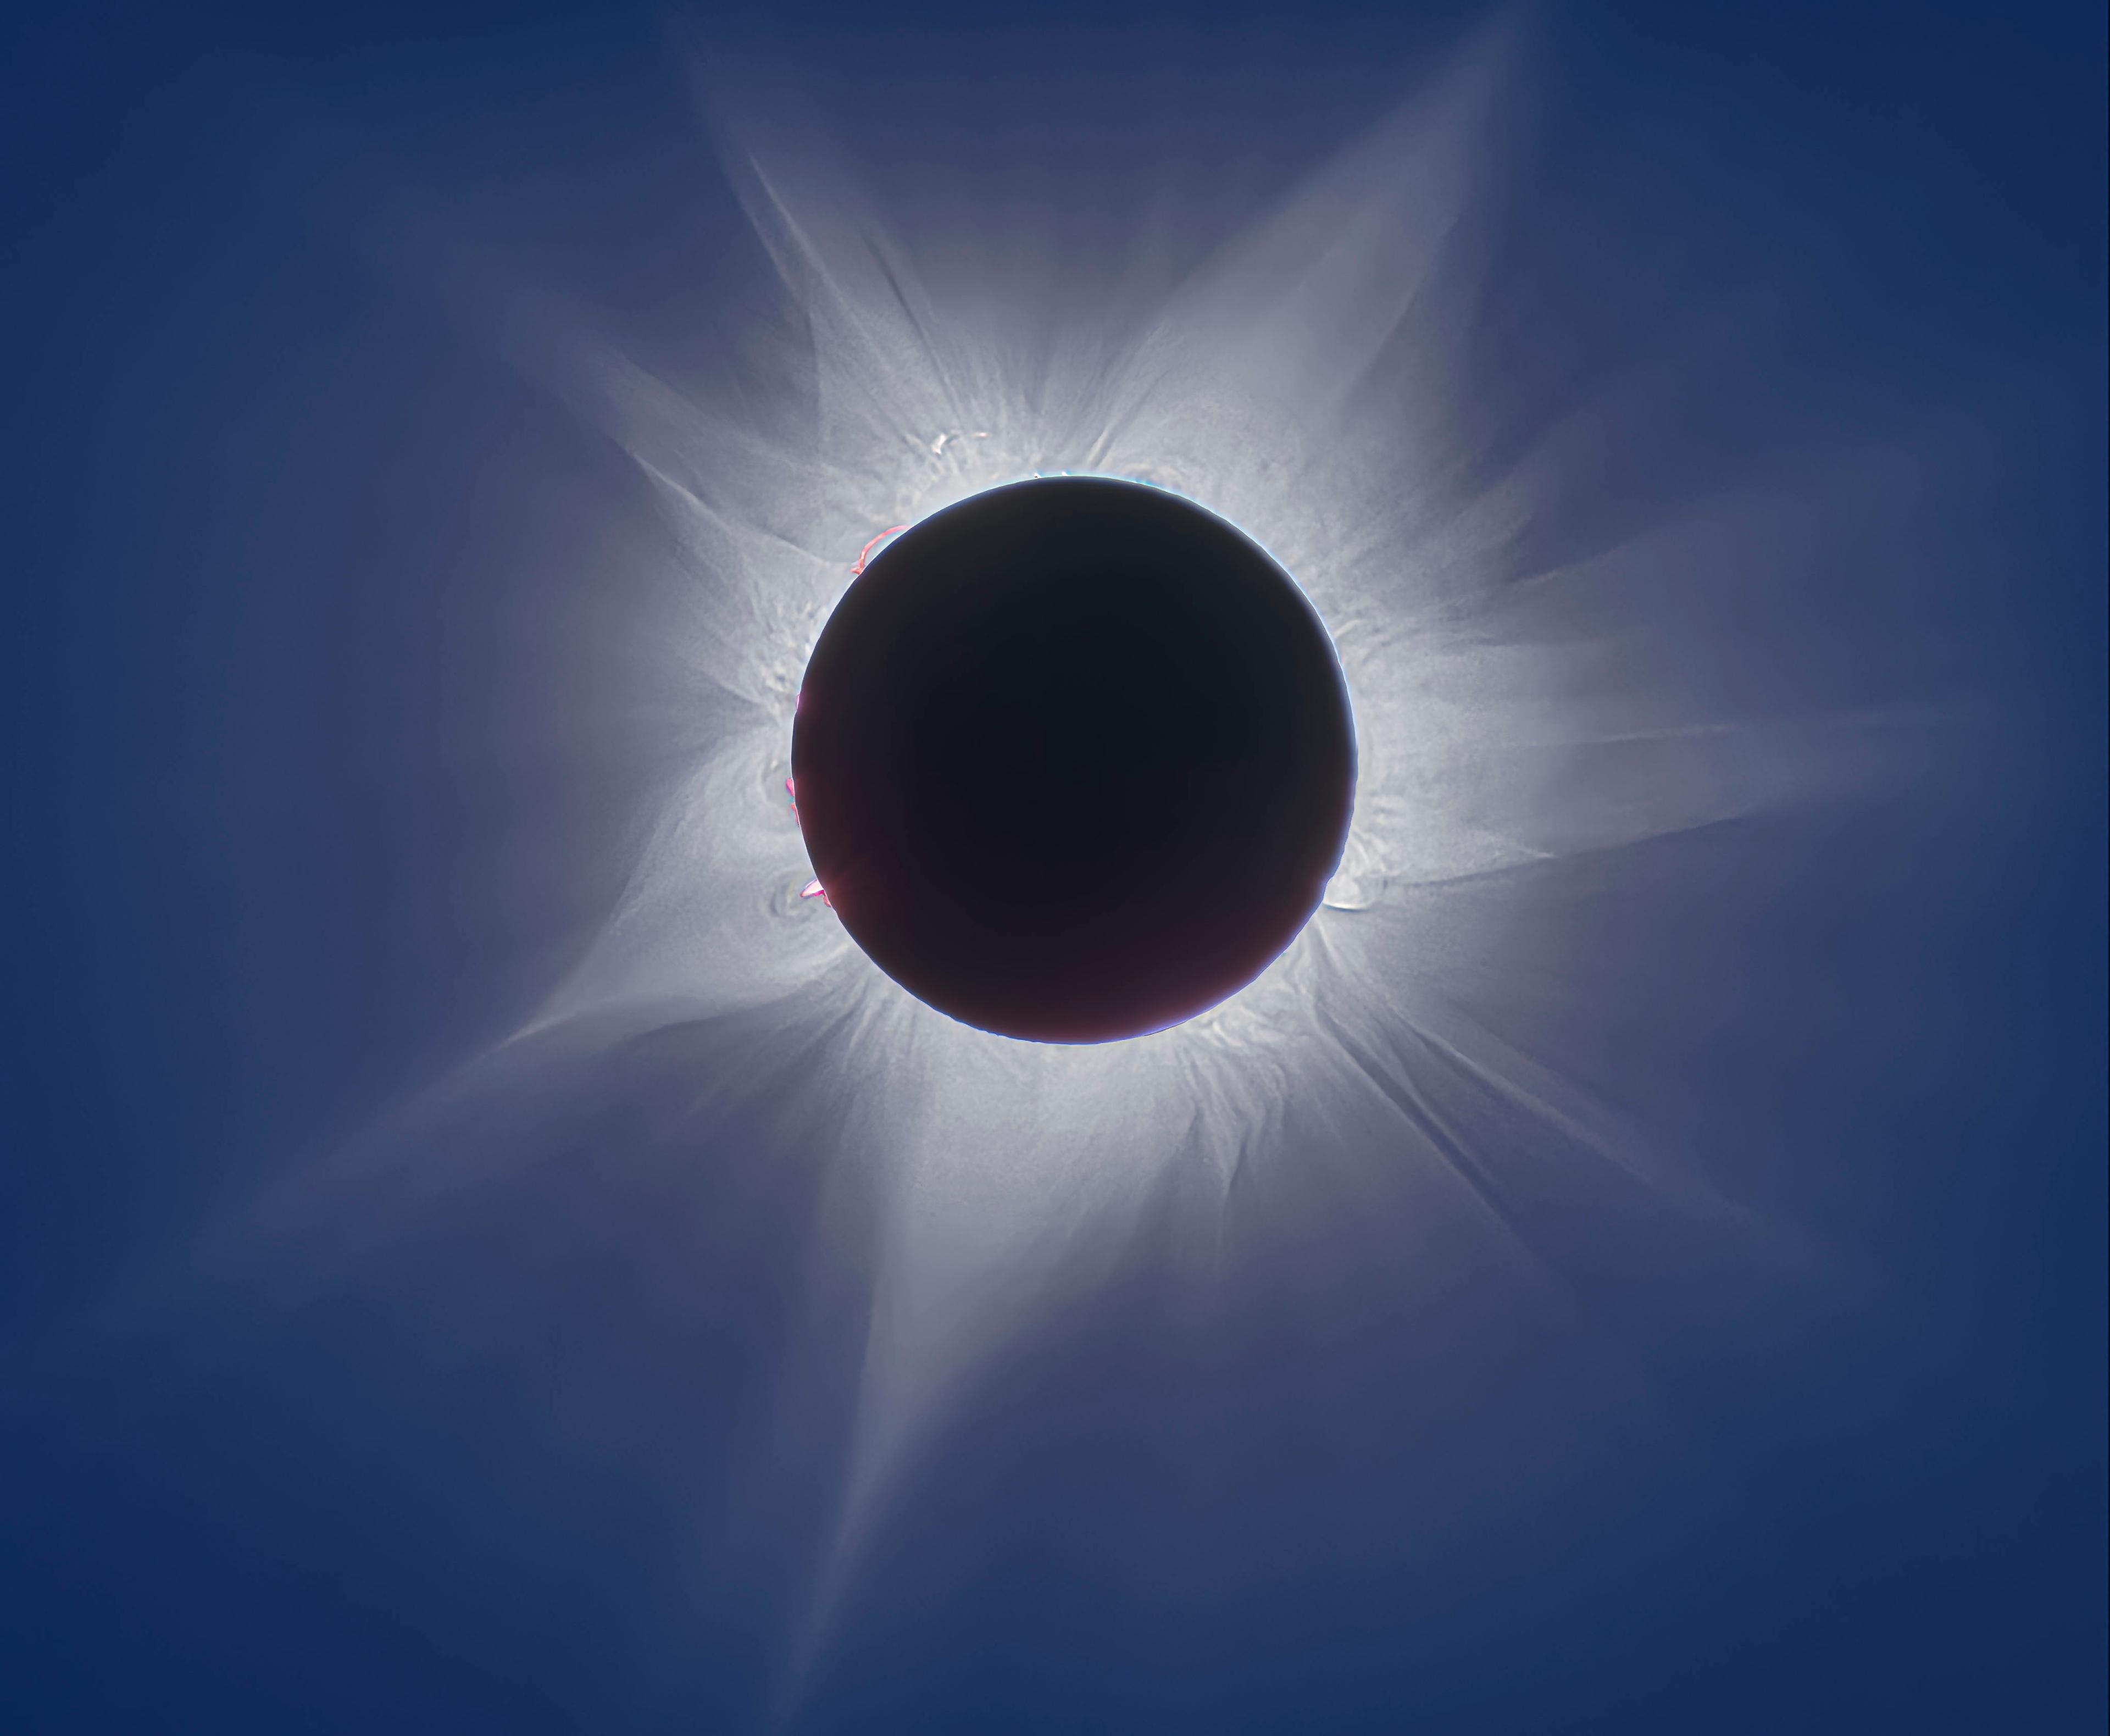 قرص أسود يمتدّ حوله الإكليل الشمسي كما تظهر بعض الشواظات الأكثف والأصغر، وحول ذلك كلّه السماء مزرقّة